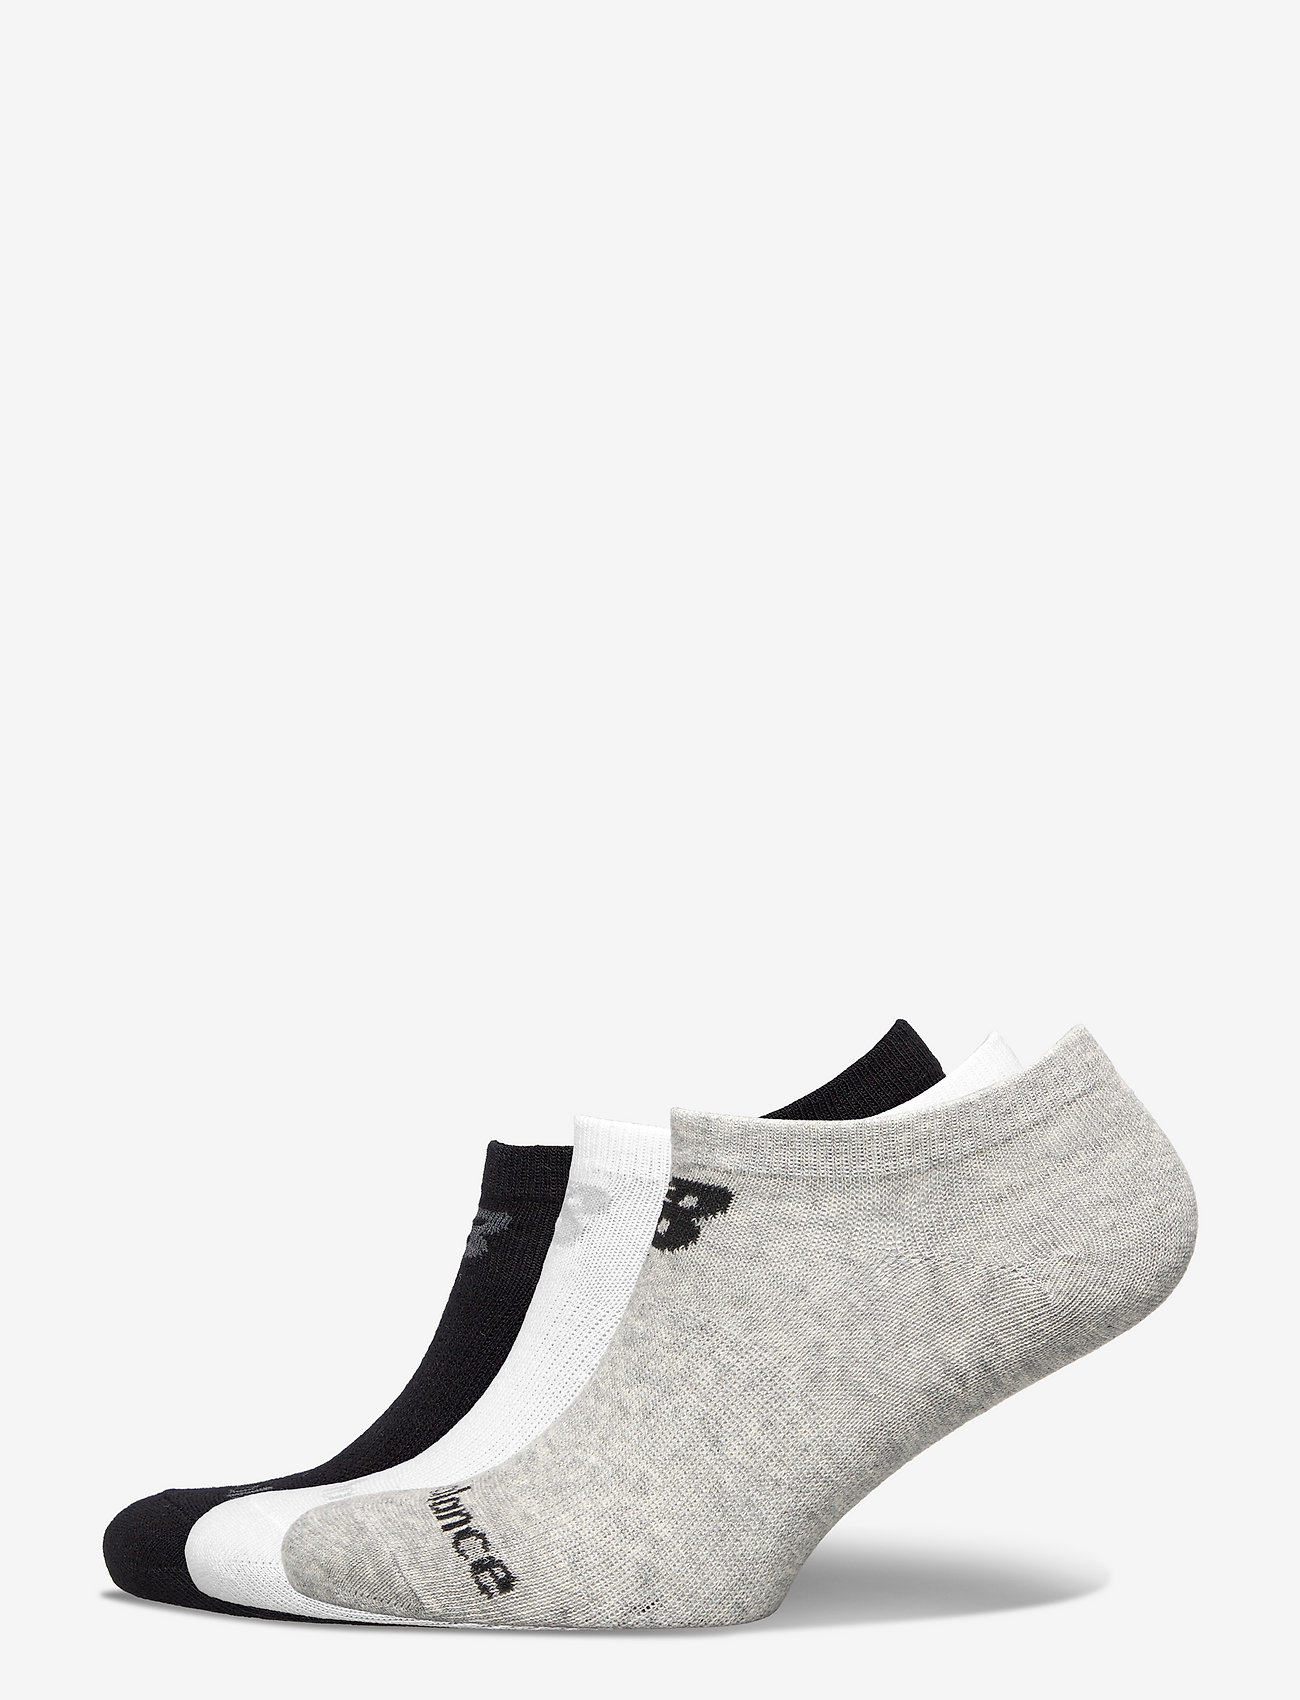 New Balance - Performance Cotton Flat Knit No Show Socks 3 Pack - Équipement de course à pied - white multi - 0